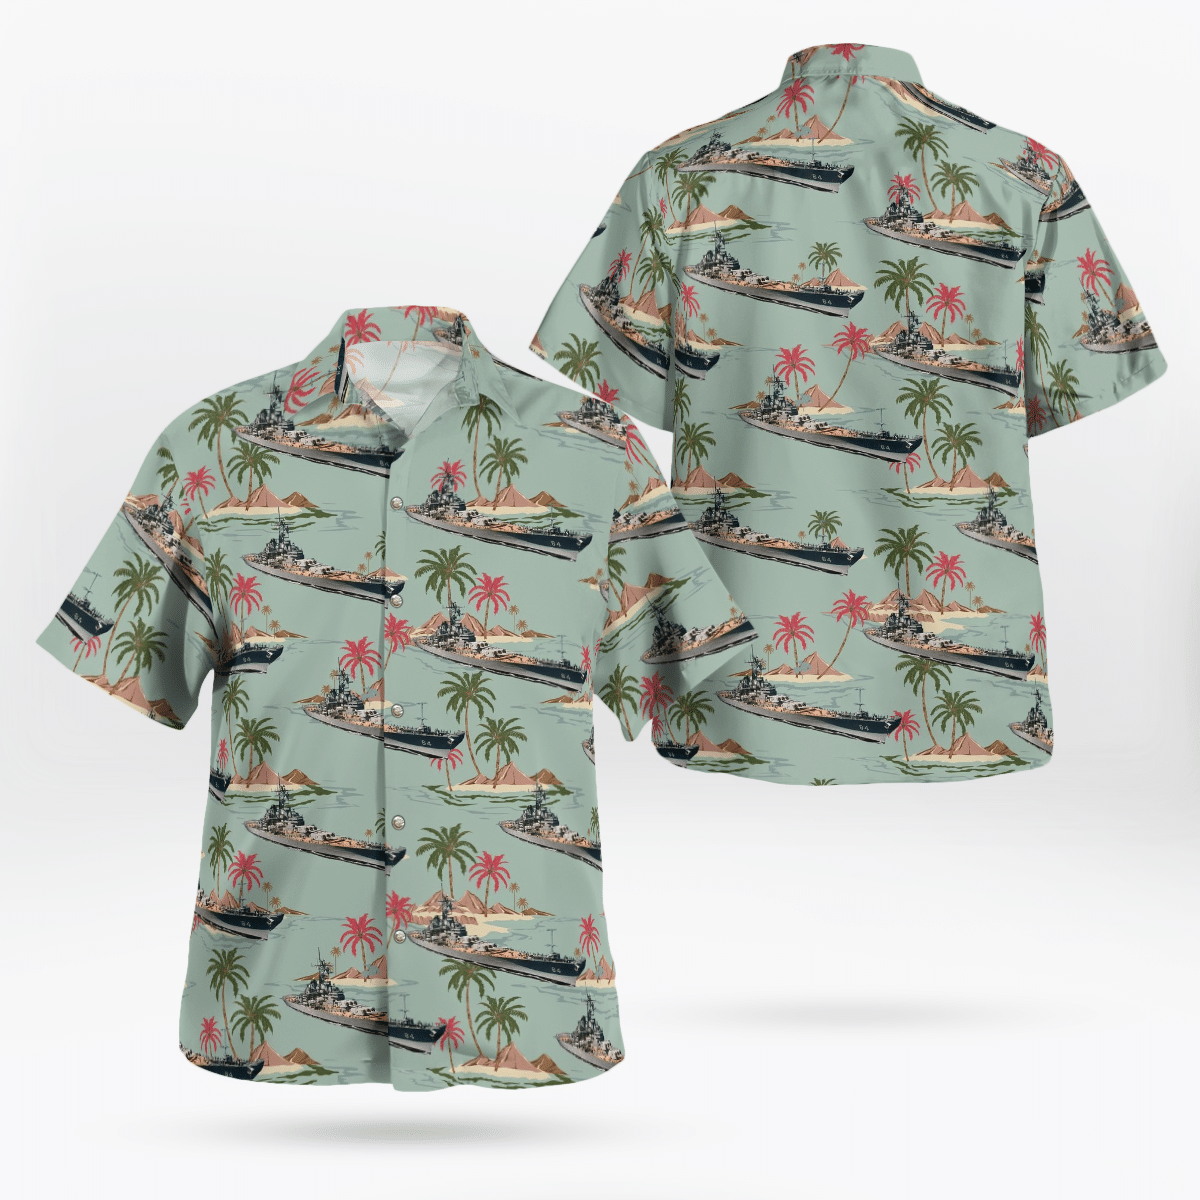 Best Hawaiian shirts 2022 176